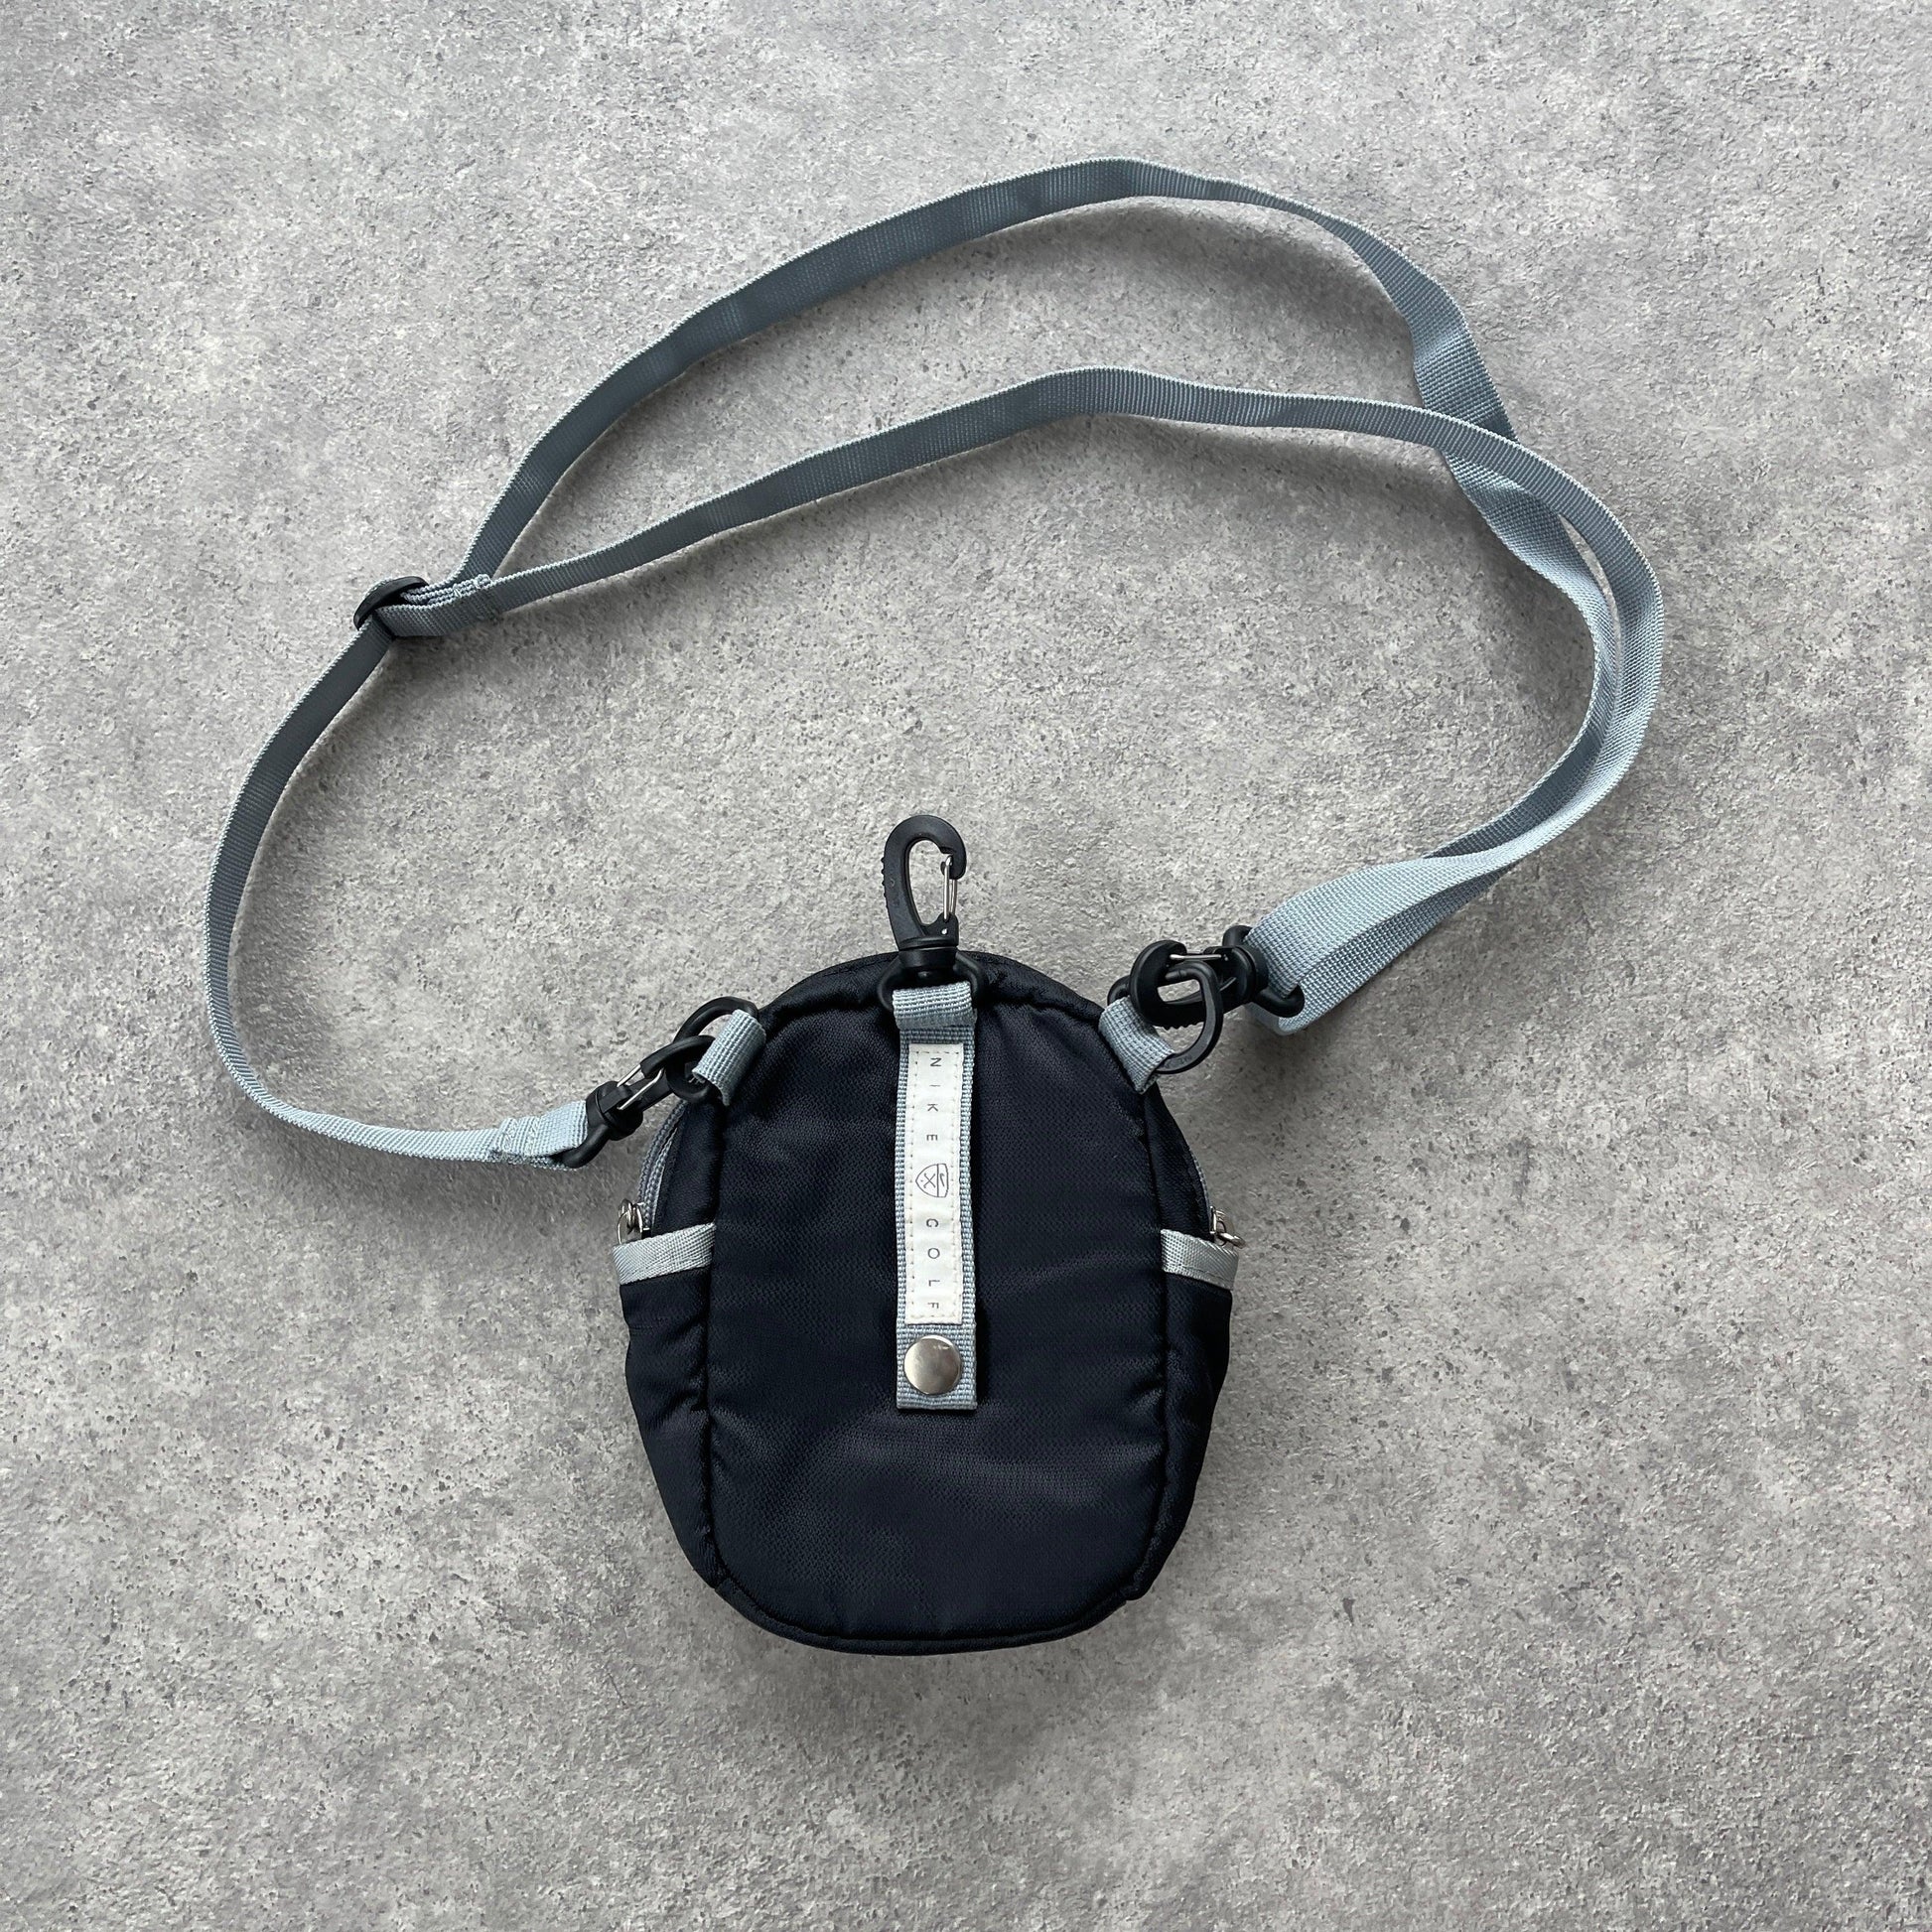 Nike 2000s cross body utility bag (7”x6”x2”) - Known Source